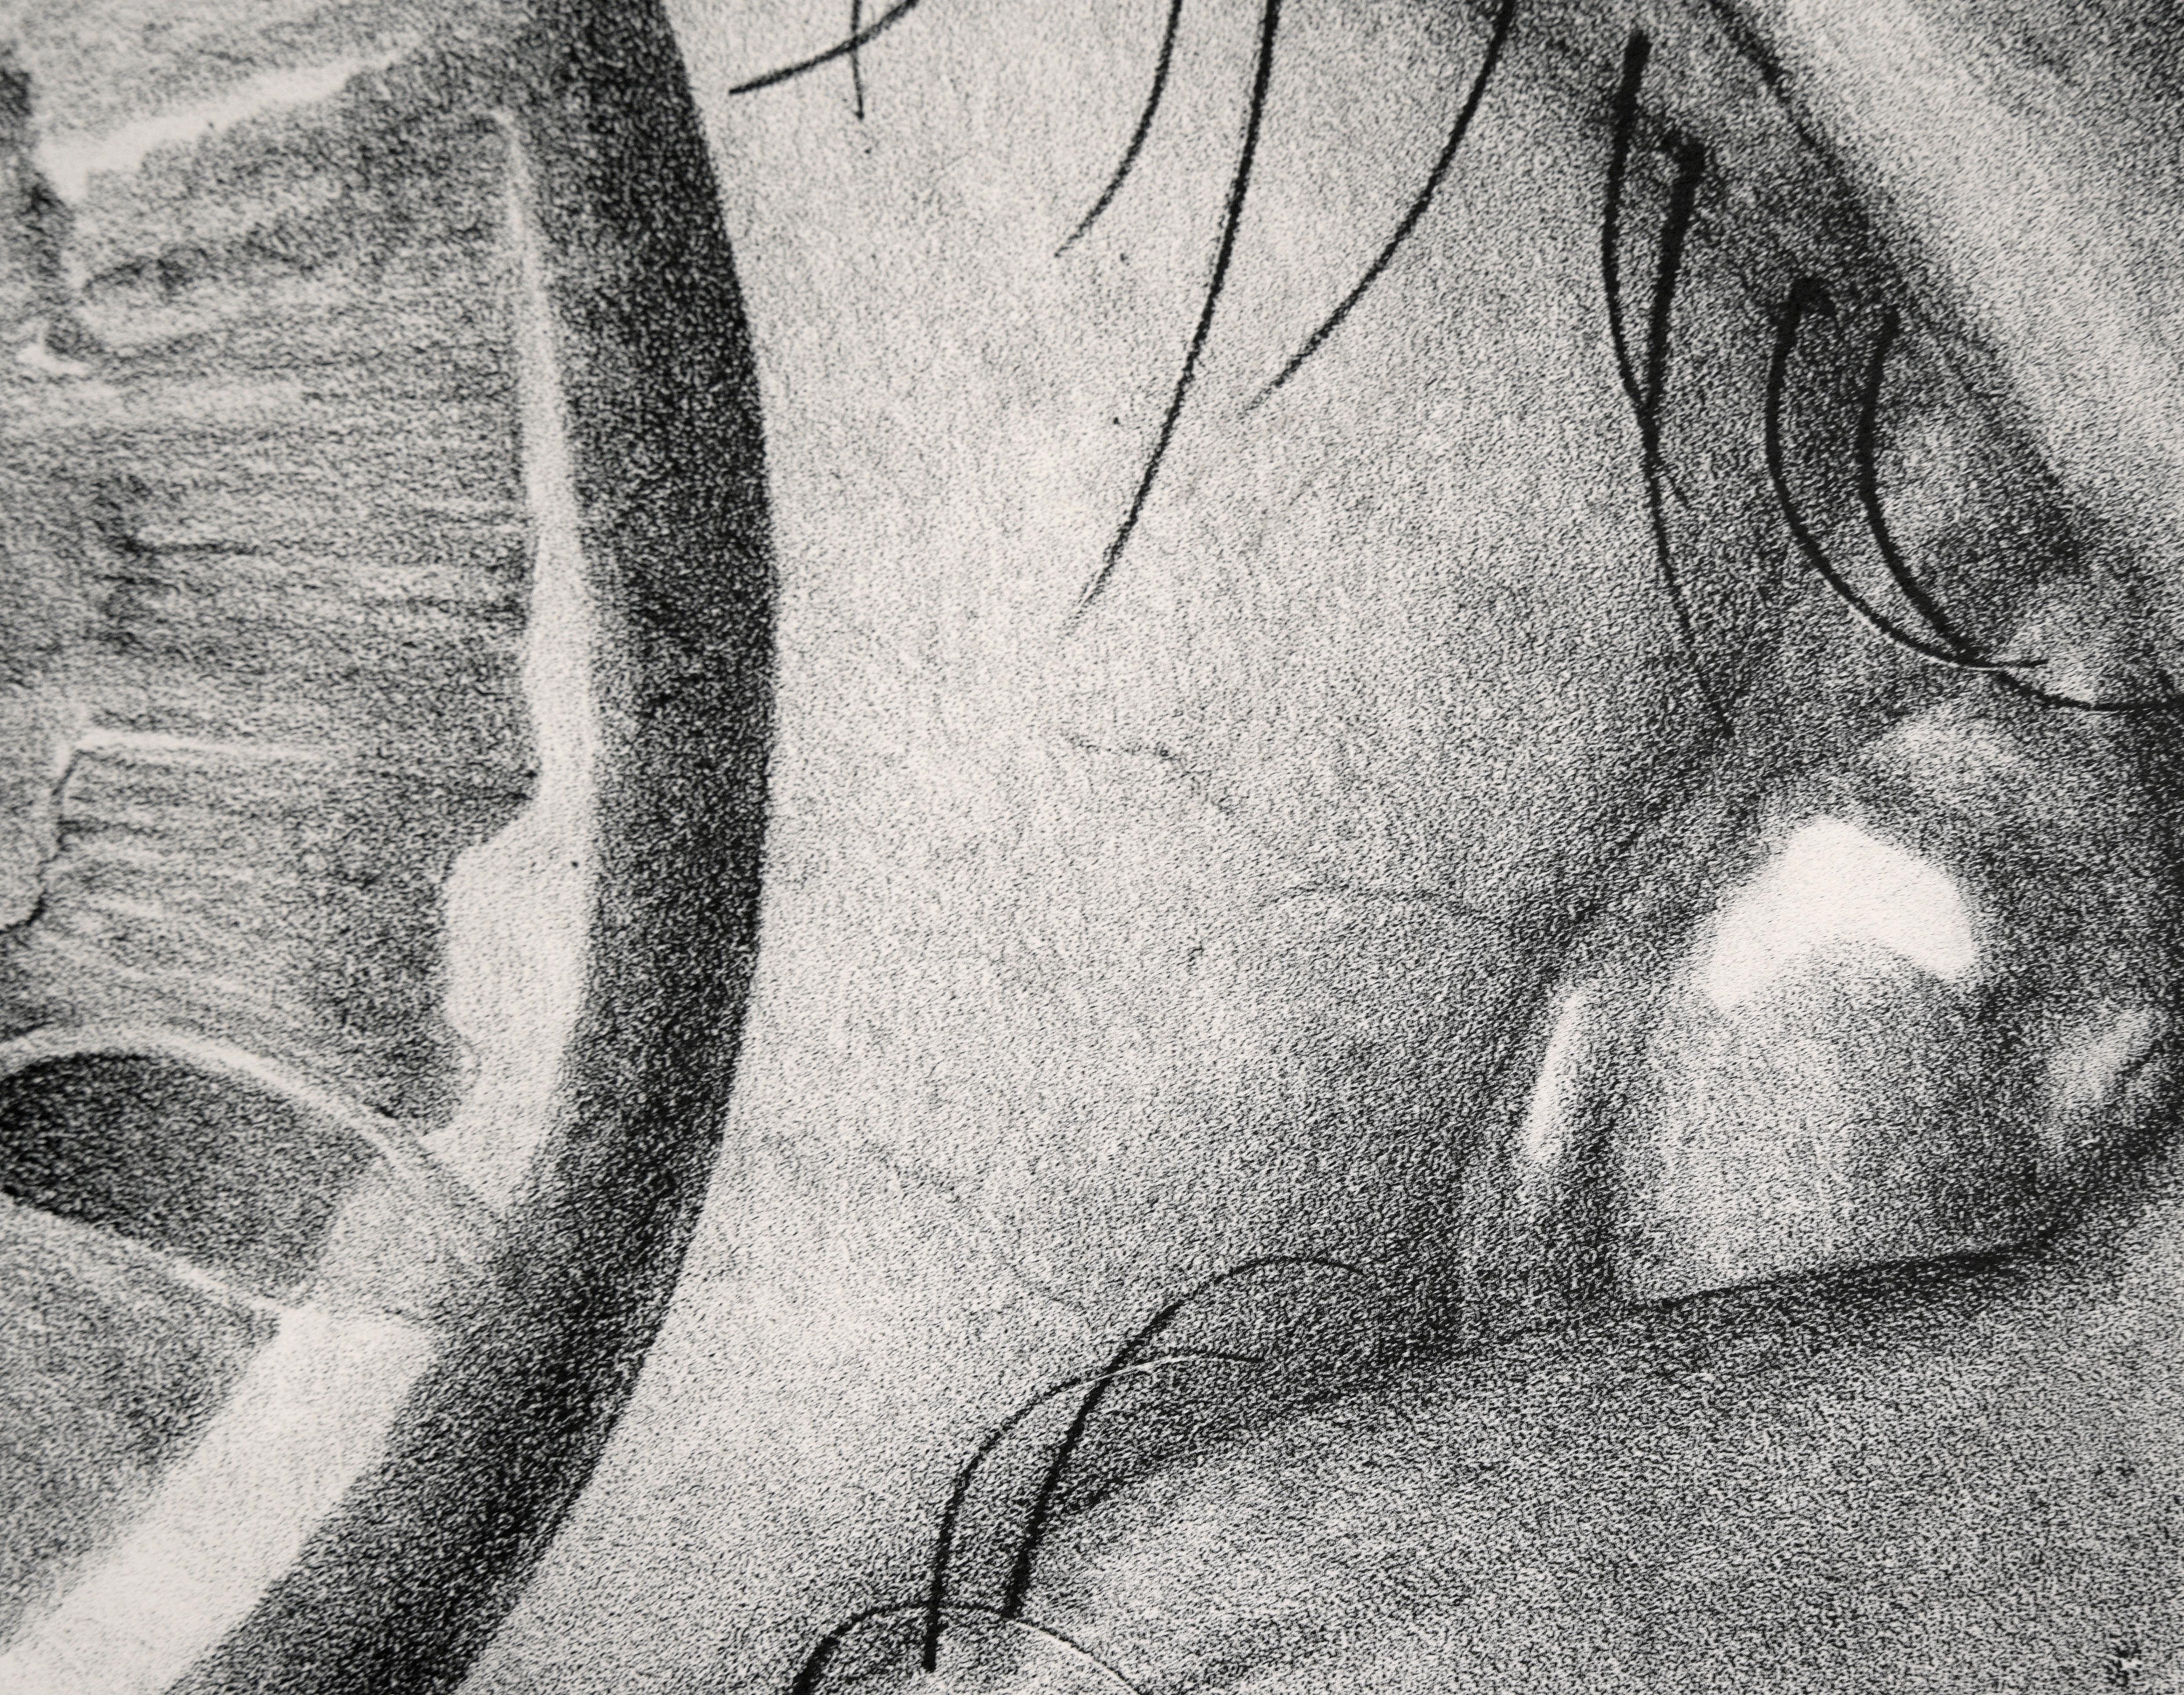 Gros plan détaillé et vivant d'un œil avec un reflet par un artiste inconnu (américain, 20e siècle). Dans le reflet de l'œil, on voit une personne assise sur le sol avec un grand serpent enroulé autour de son corps. Après un dessin similaire d'A&M.